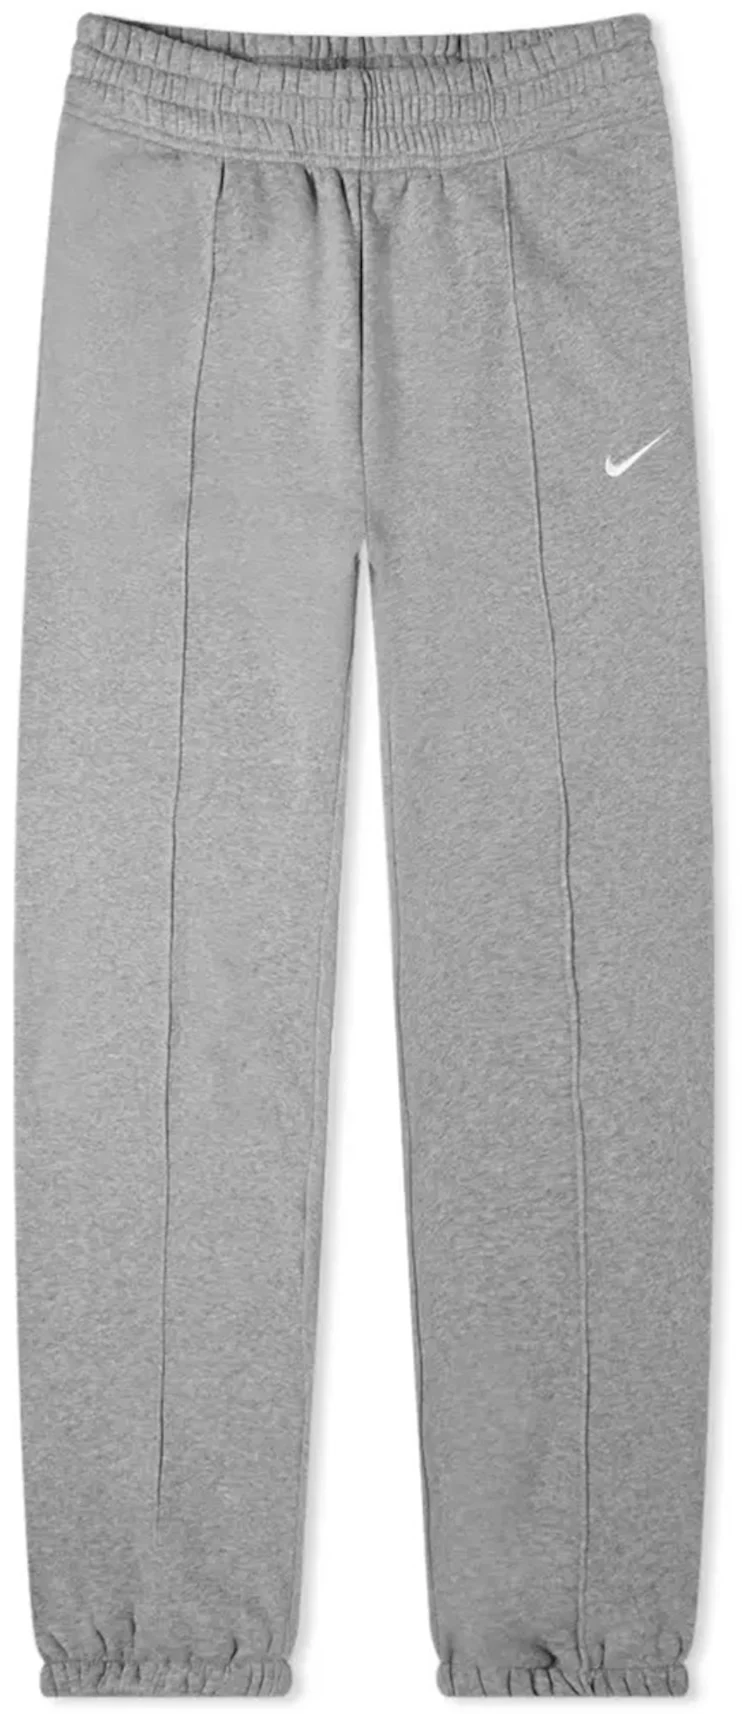  Nike Women's Sportswear Essential Fleece Sweatpants Bv4091  (X-Small, Dk Grey Heather) : Clothing, Shoes & Jewelry